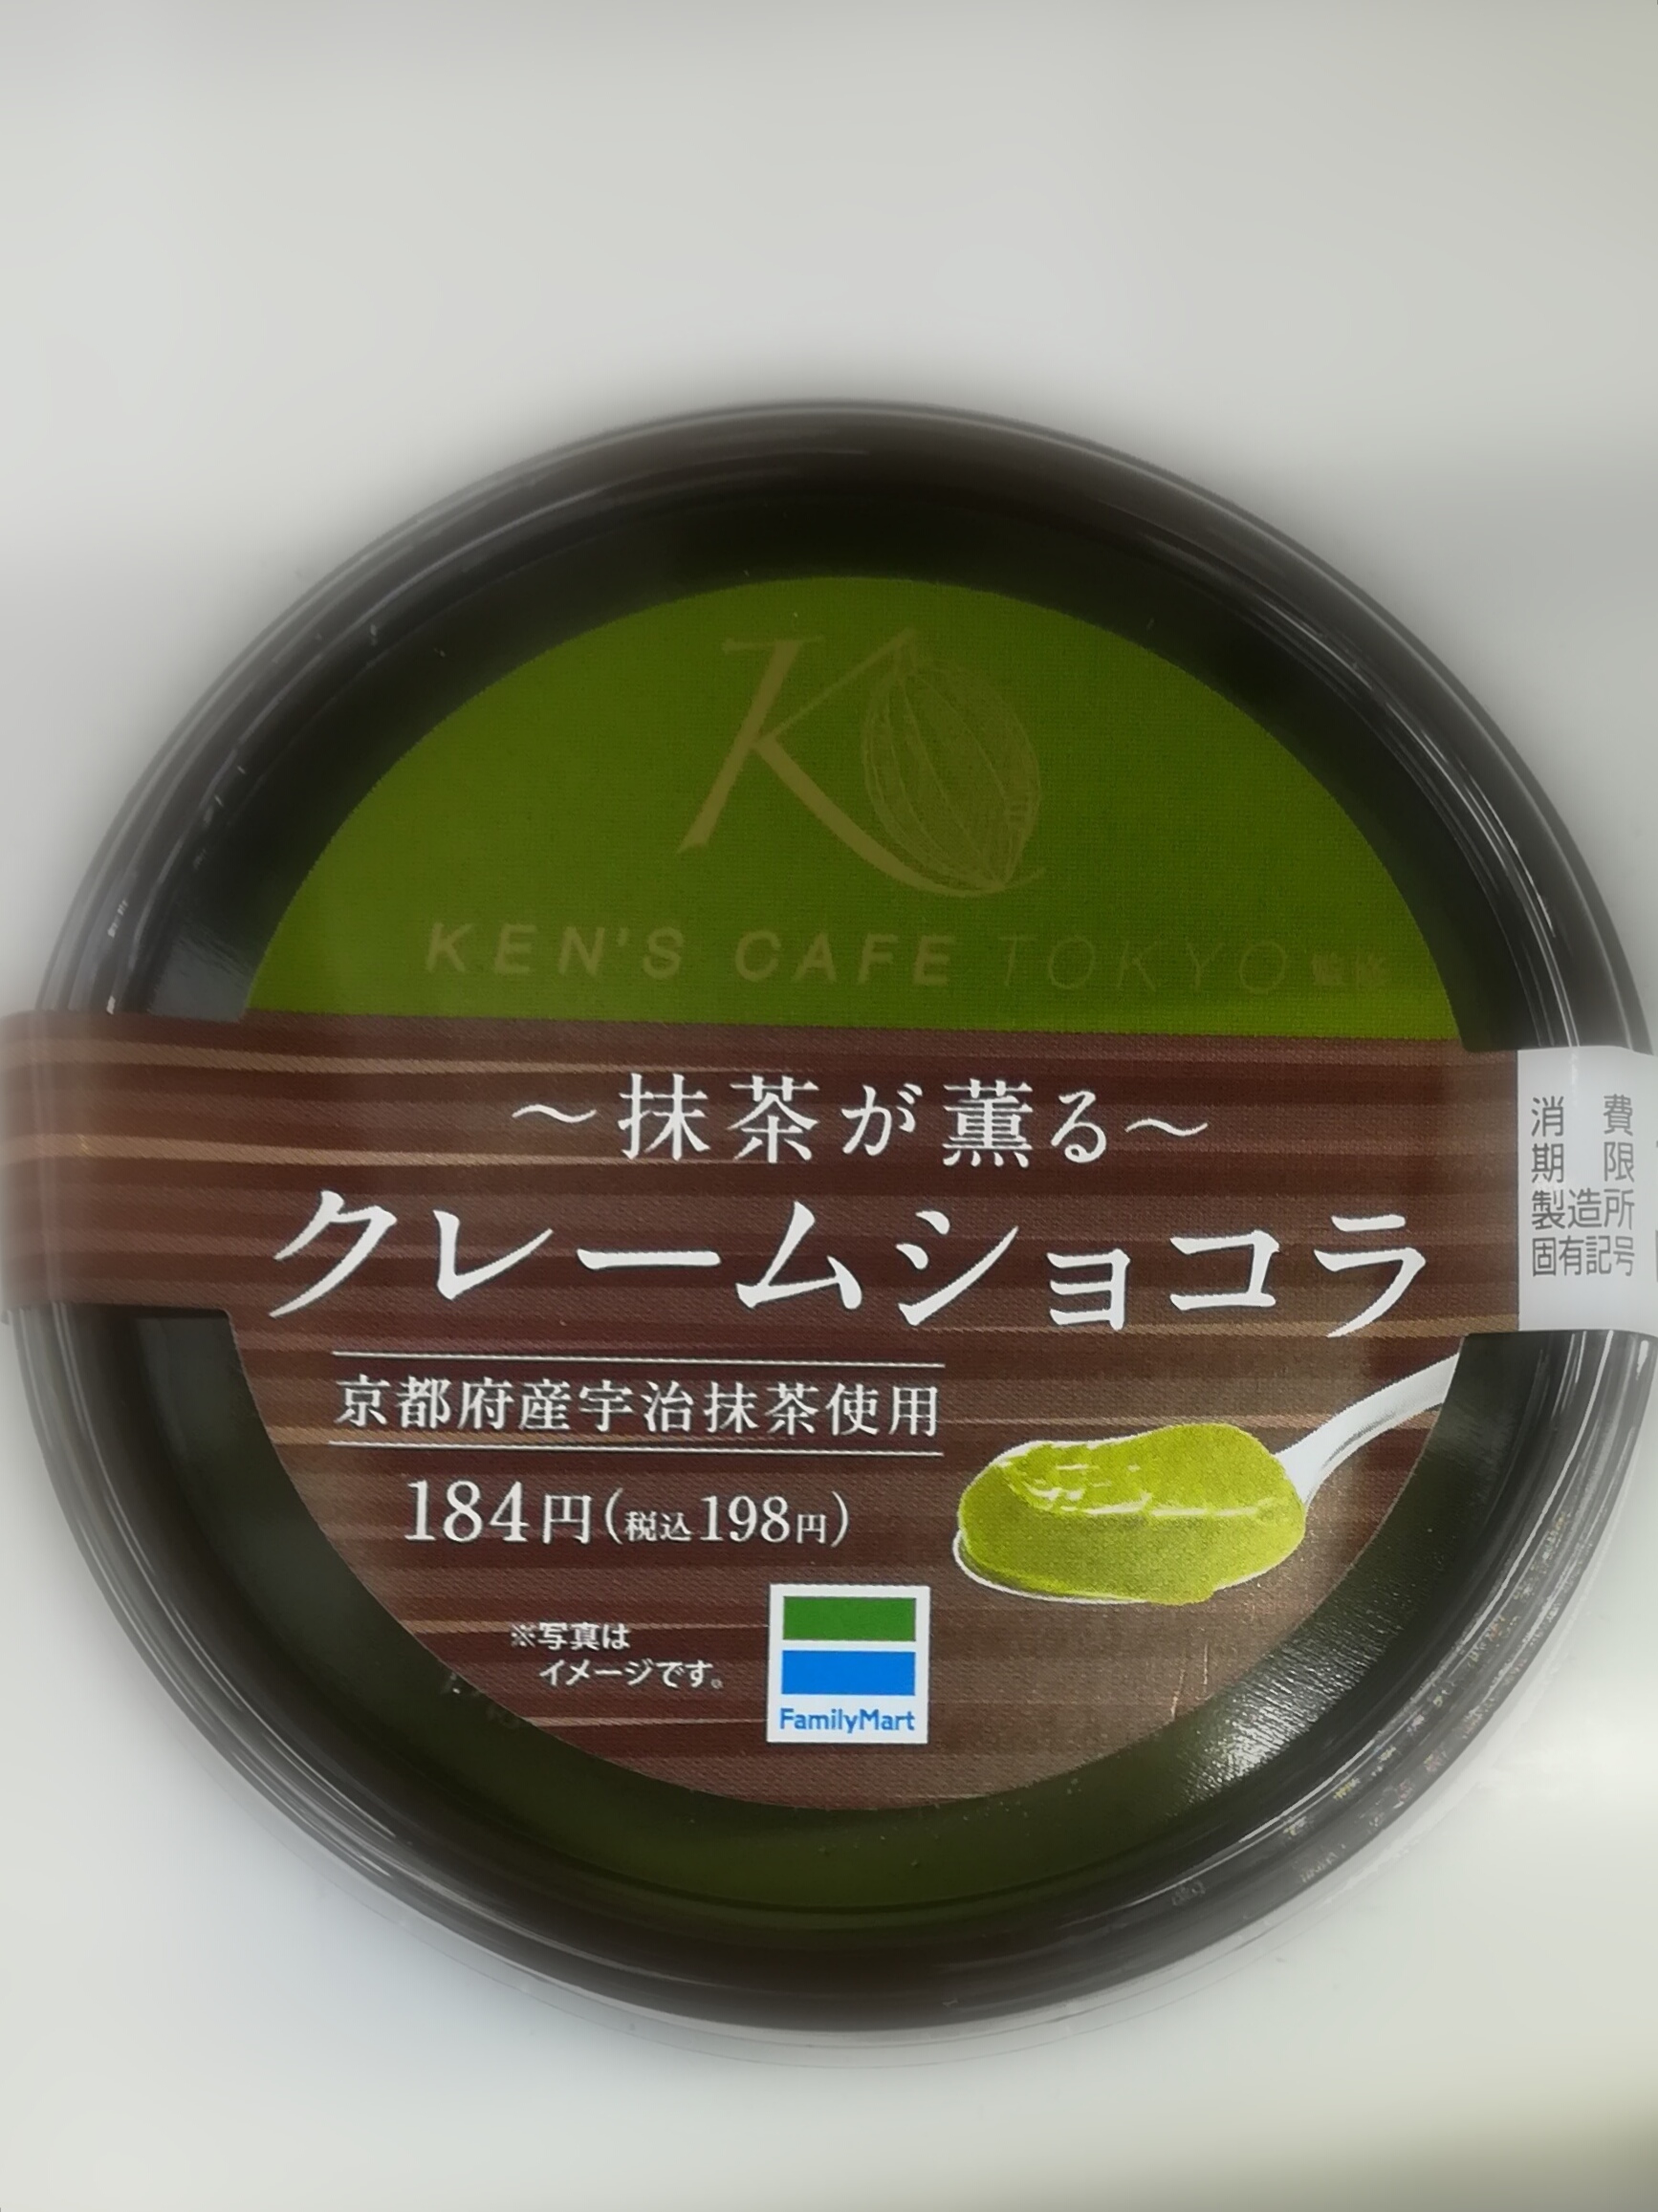 ケンズカフェ東京というお店の監修の『抹茶薫るクレームショコラ』 は飛ぶように売れる！